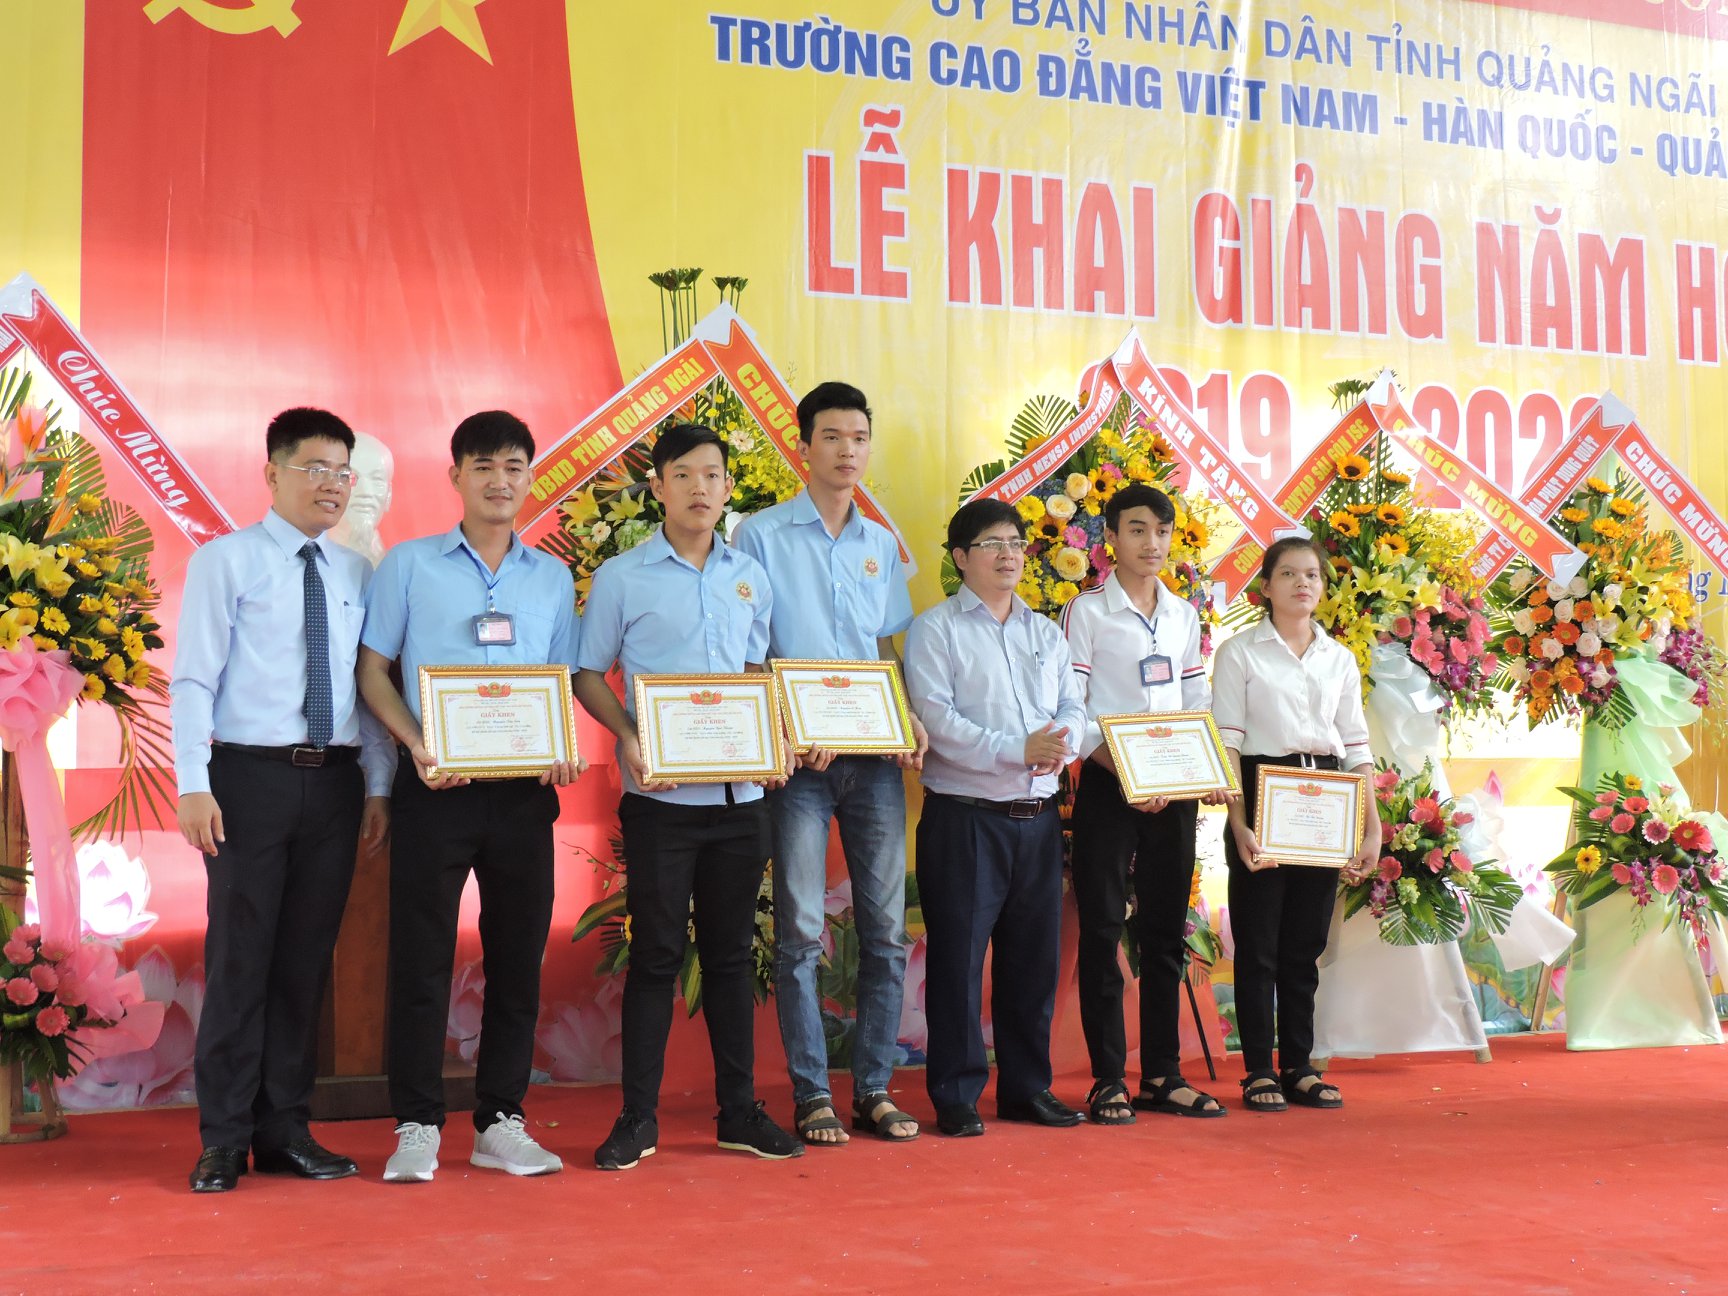 Trường cao đẳng Việt Nam - Hàn Quốc - Quảng Ngãi tổ chức khai giảng năm học  2019 – 2020 - TRƯỜNG CAO ĐẲNG VIỆT NAM - HÀN QUỐC - QUẢNG NGÃI